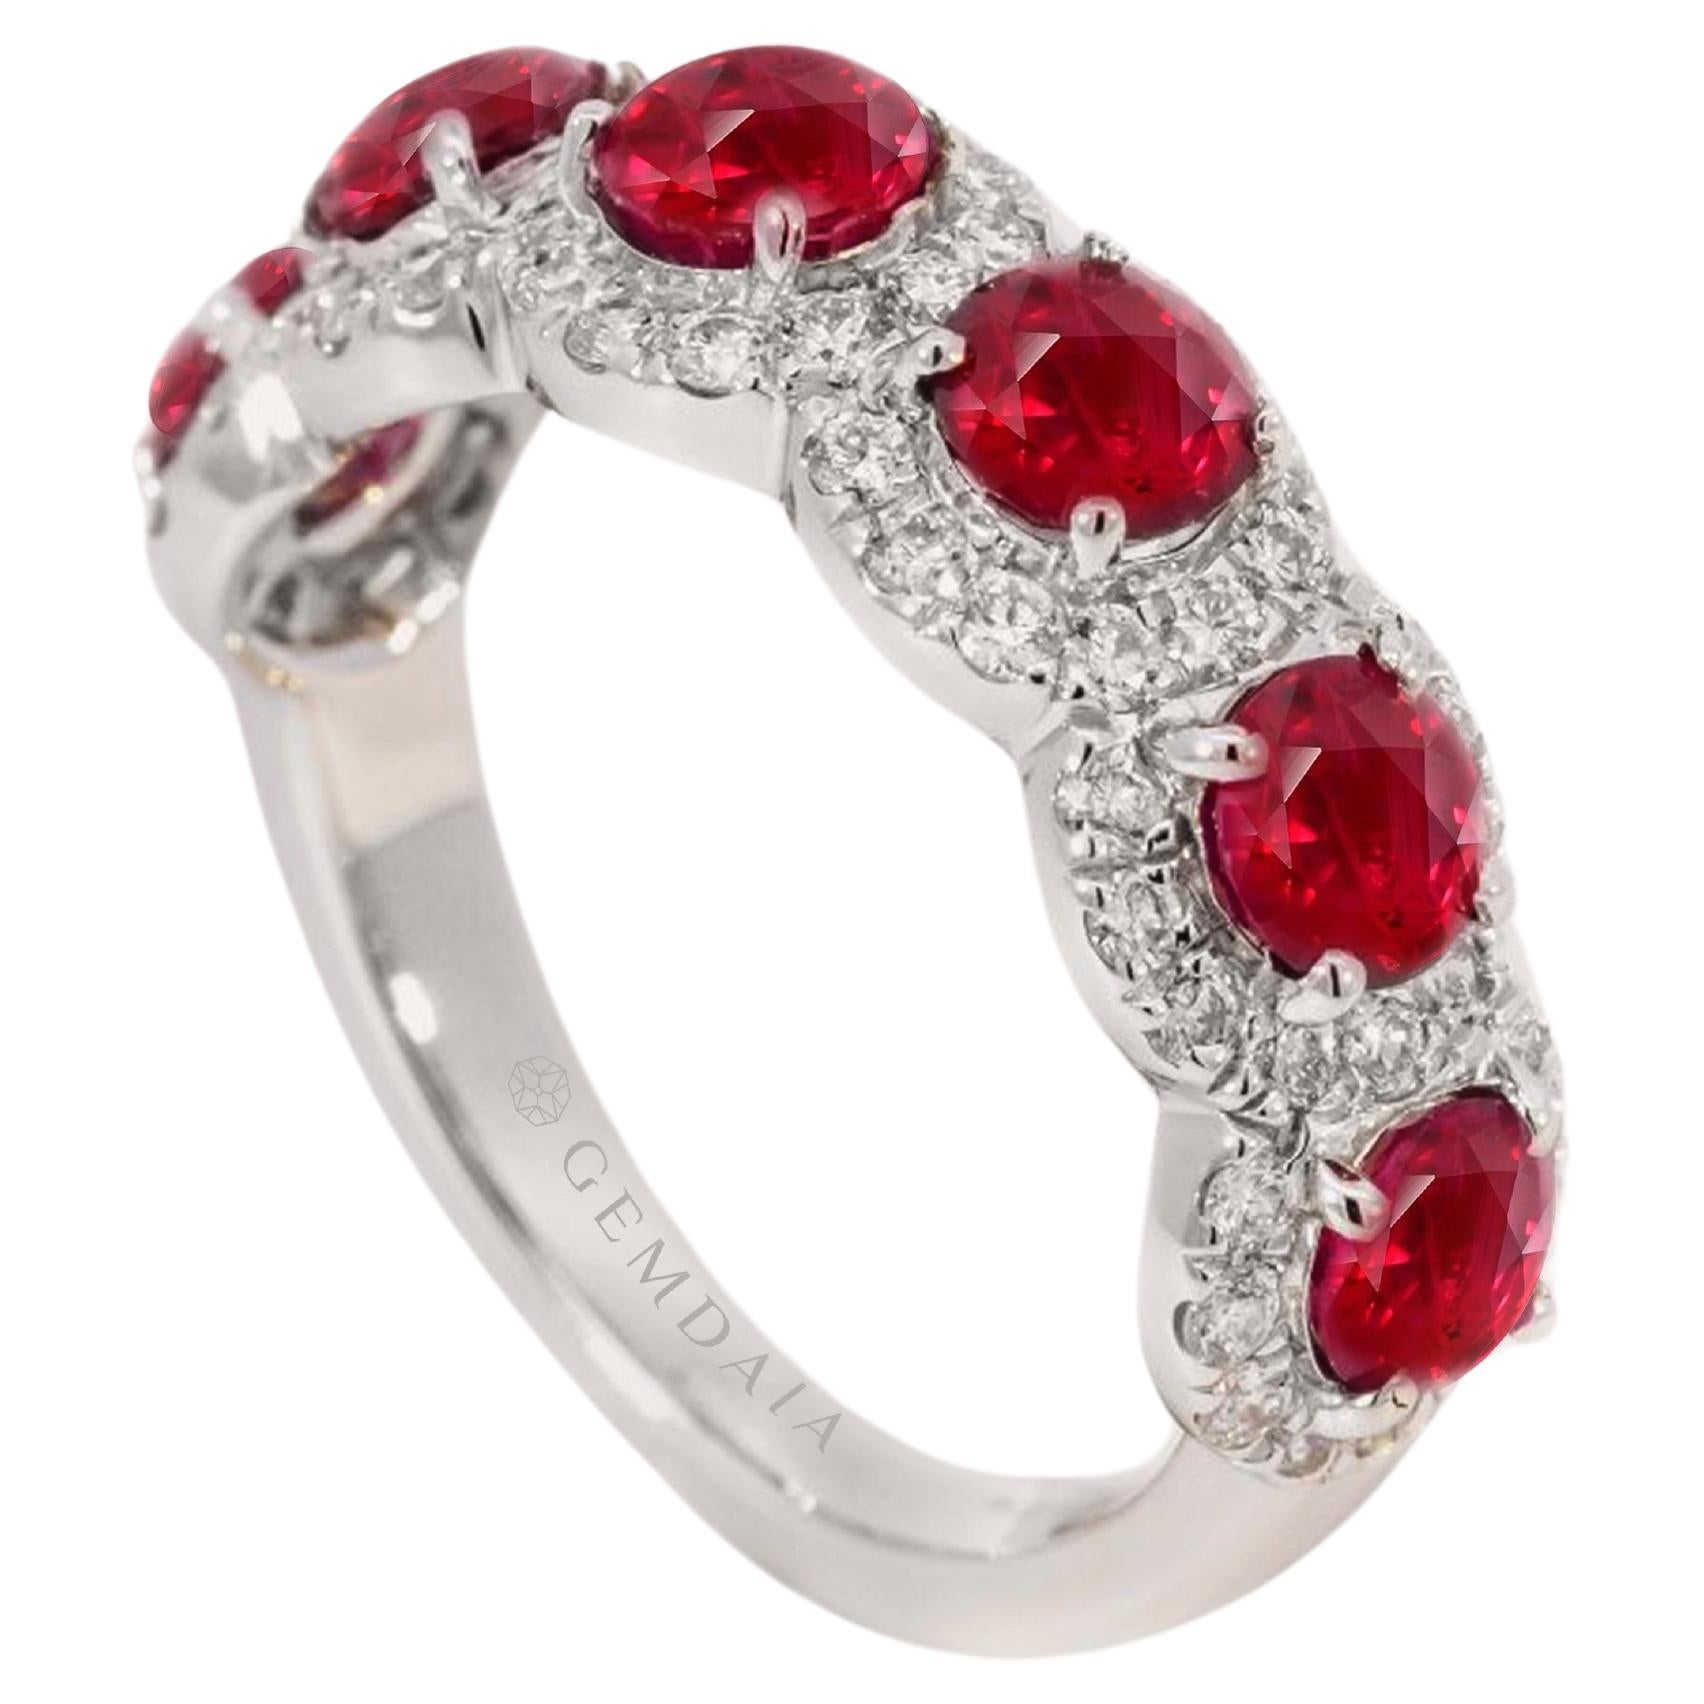 Zertifizierter Multi-Stein-Ring mit natürlichem Rubin und Diamanten - Taubenblutrot  Rubine im Angebot